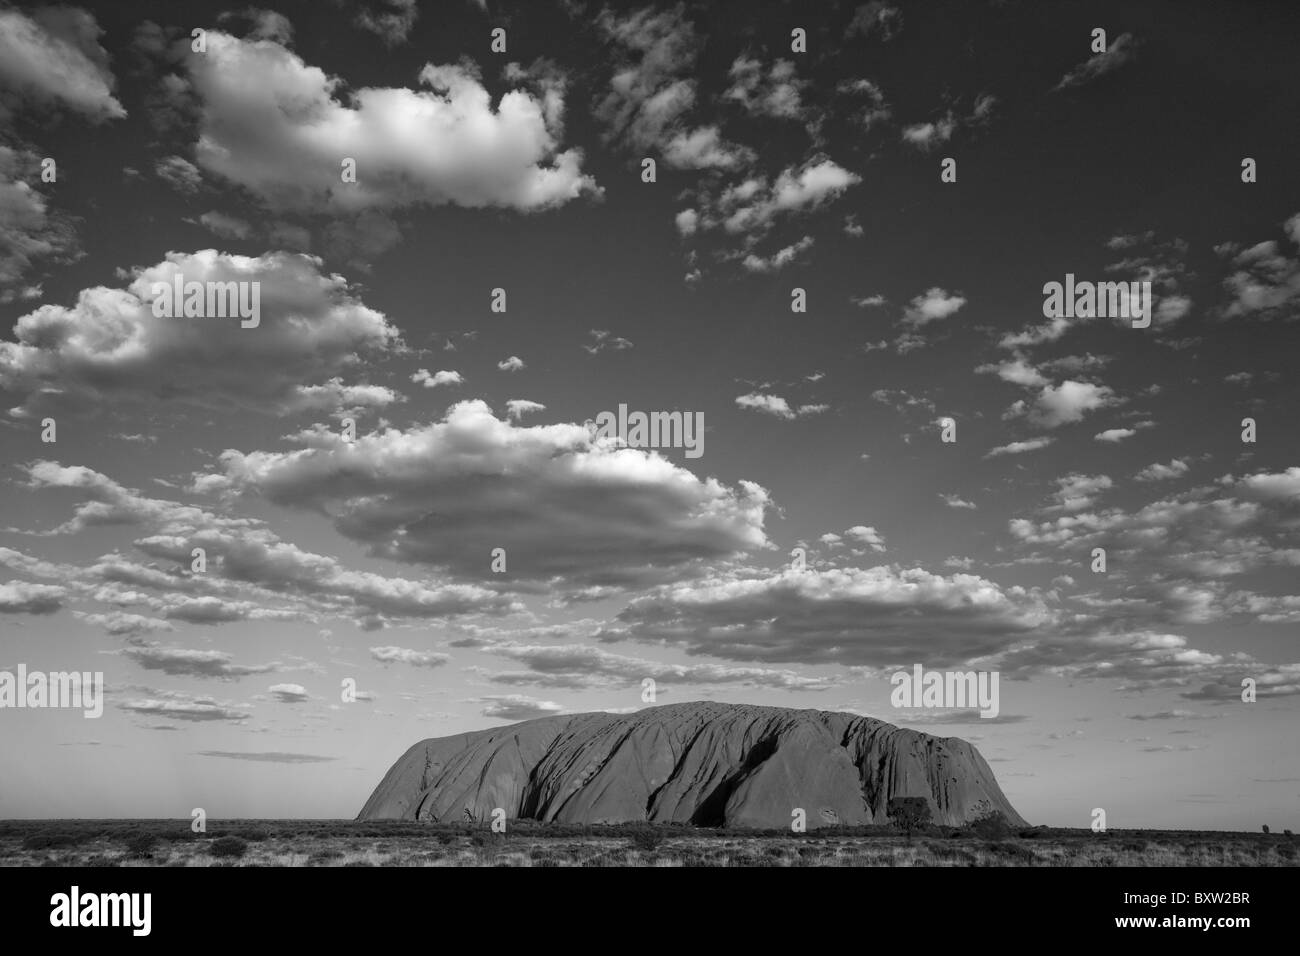 L'Australie, Territoire du Nord, Uluru - Kata Tjuta National Park, Ayers Rock sur l'après-midi d'été Banque D'Images